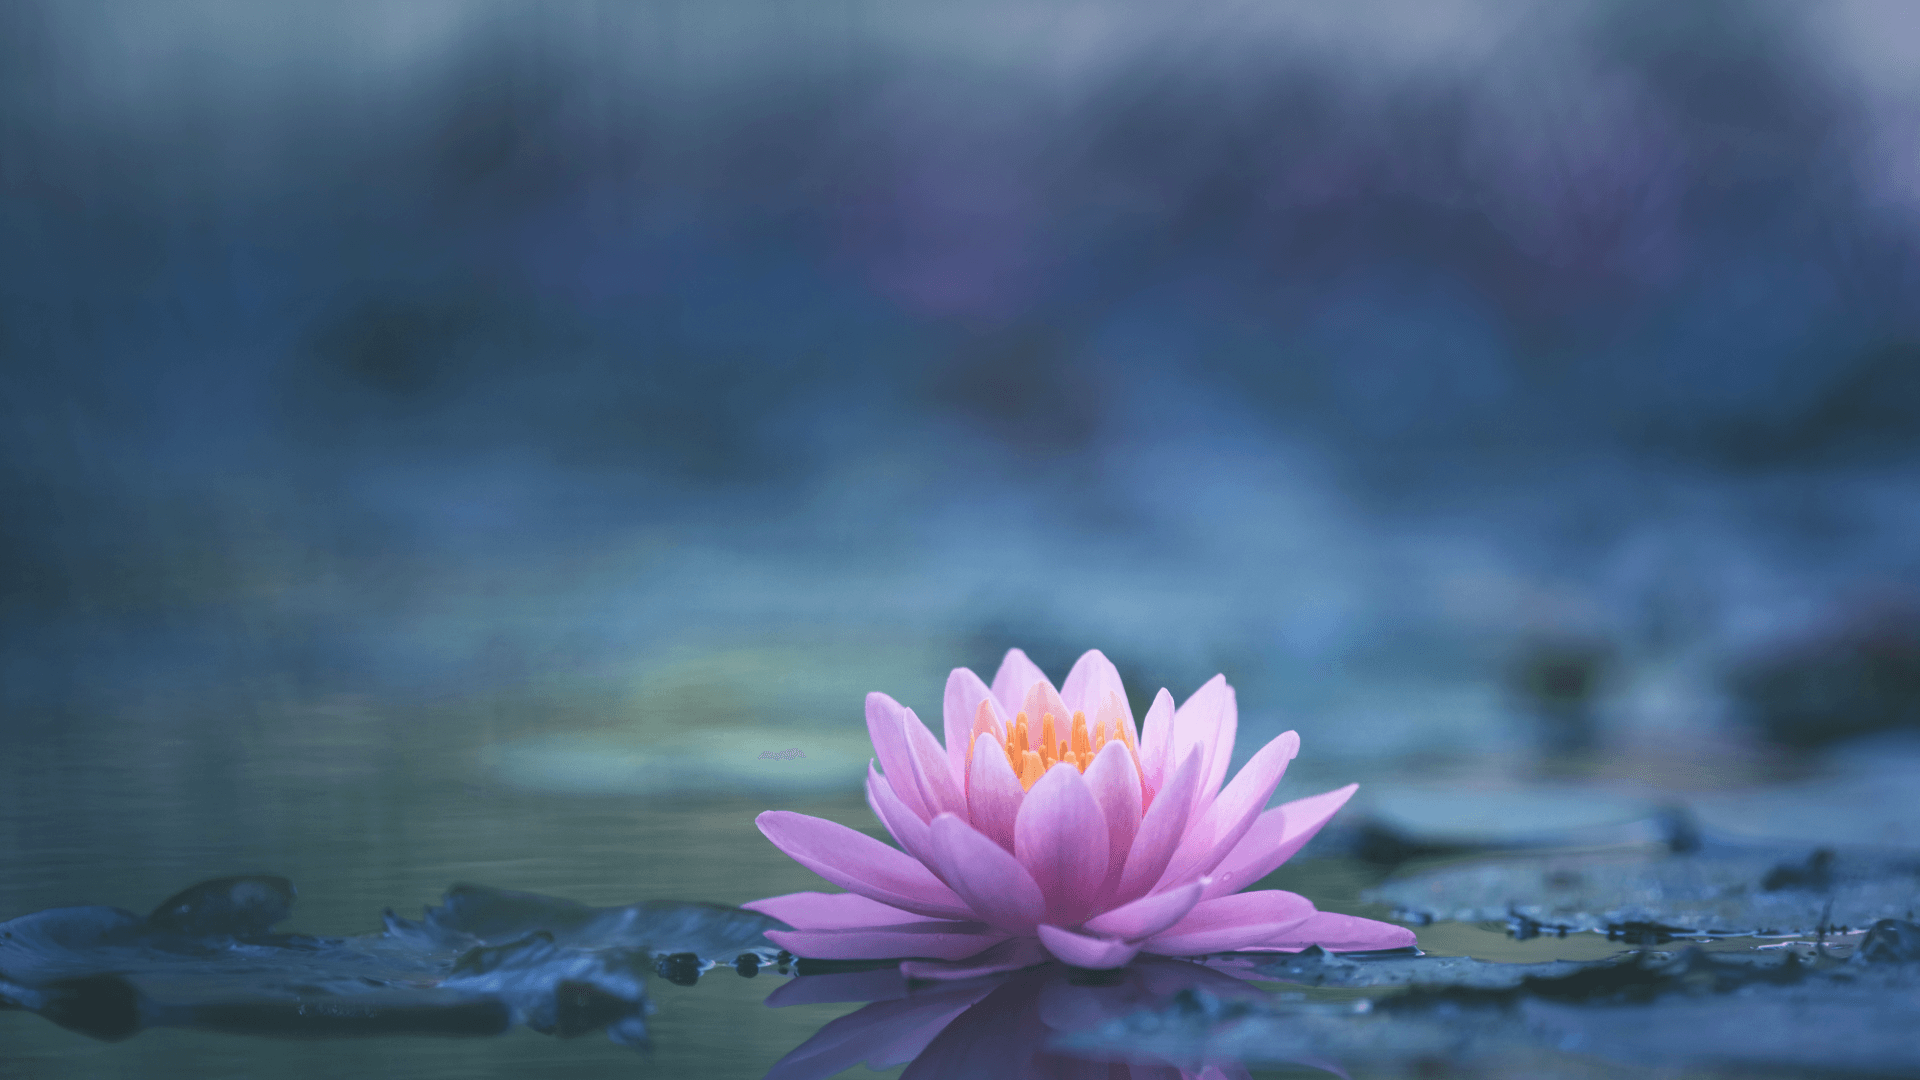 La fleur de lotus: Signification d'un symbole sacré ! – ANKORA